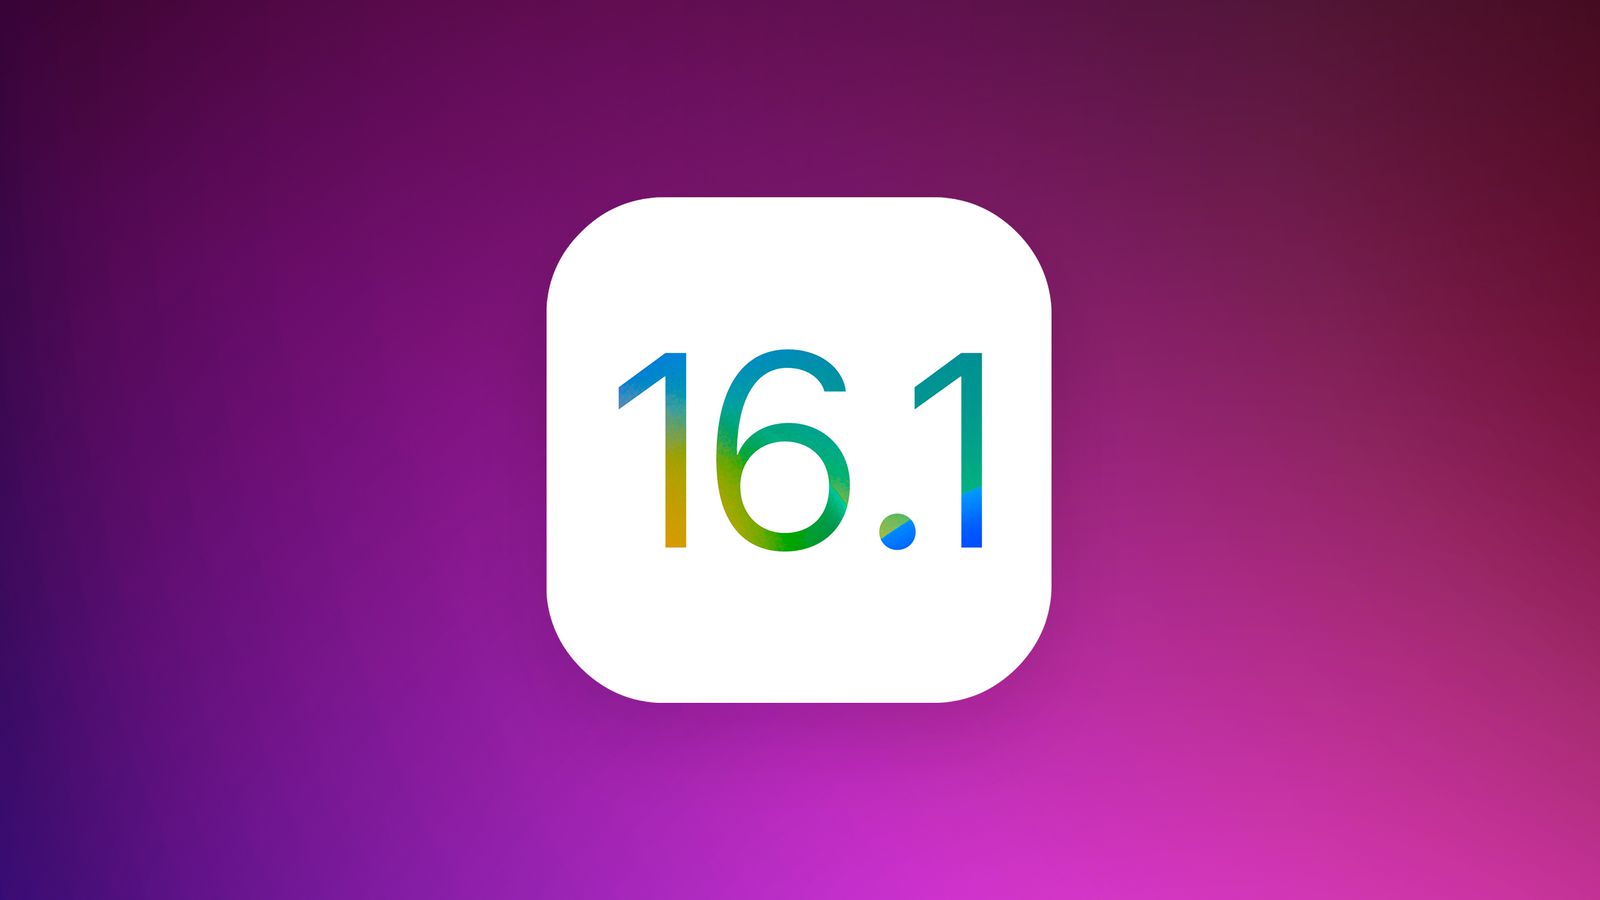 Вышла iOS 16.1 Beta, рассказываем обо всех новых функциях в системе